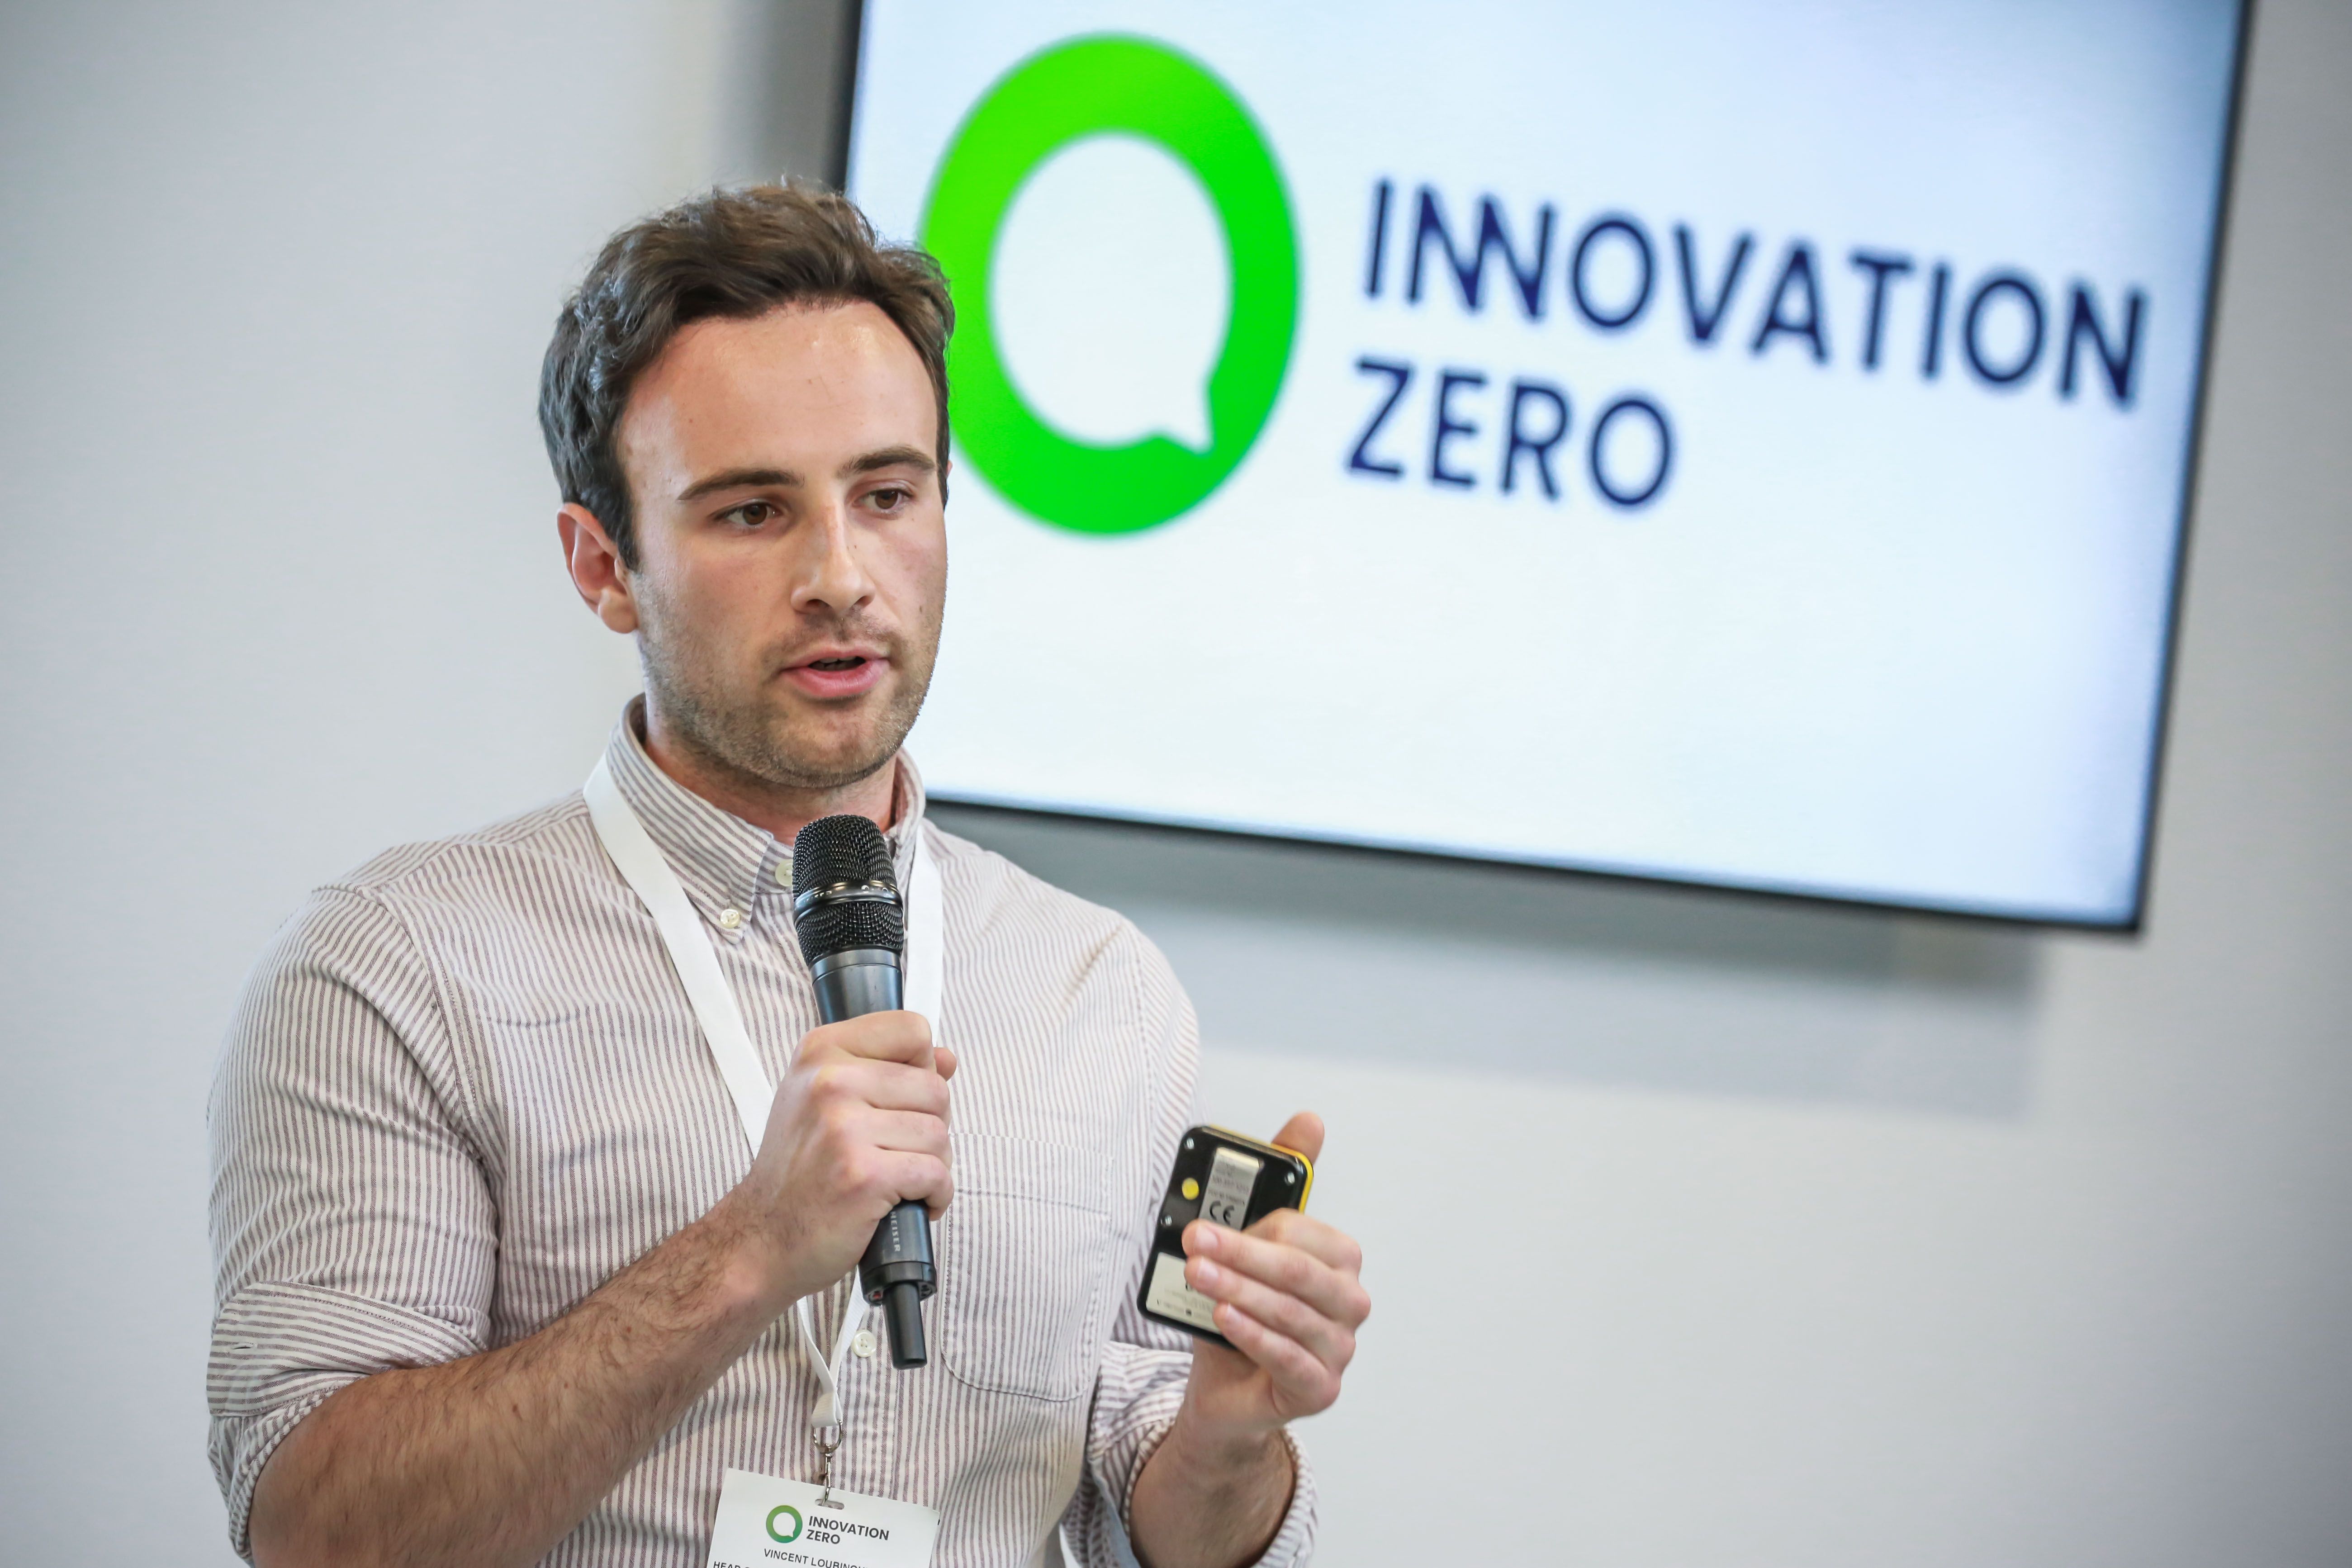 Innovation Zero Network